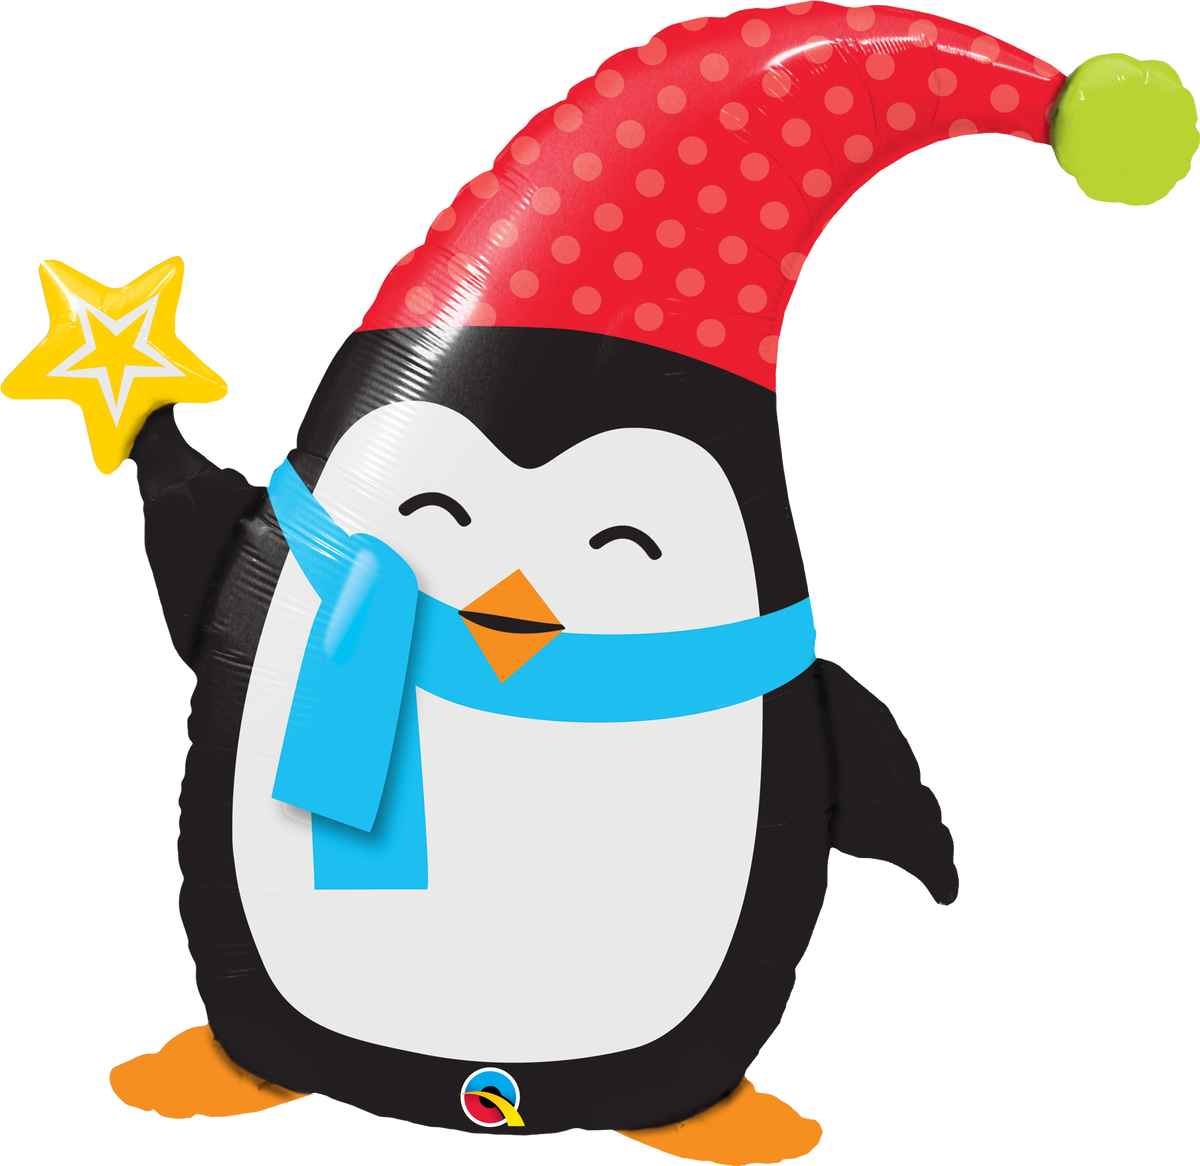 Penguin balloon â party fever